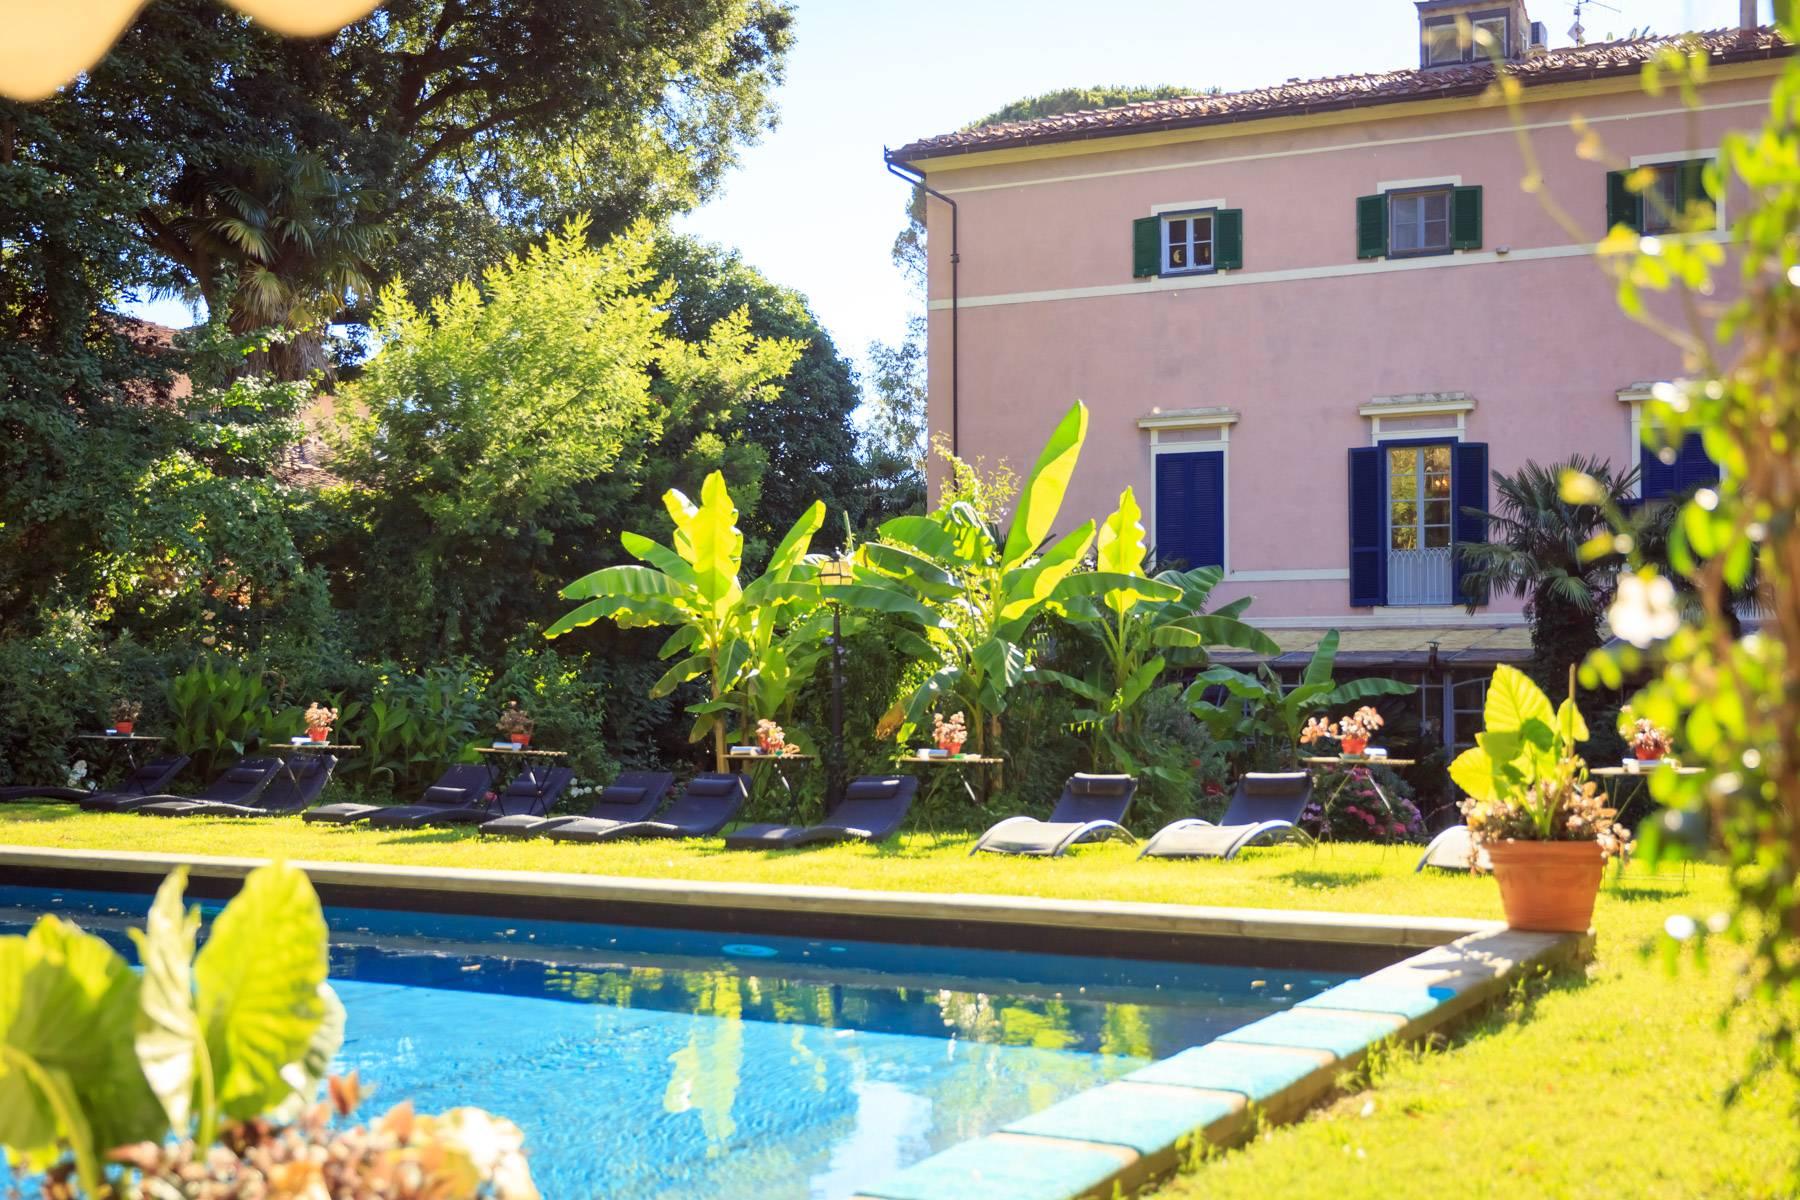 Romantic villa for sale in Pisa - 4